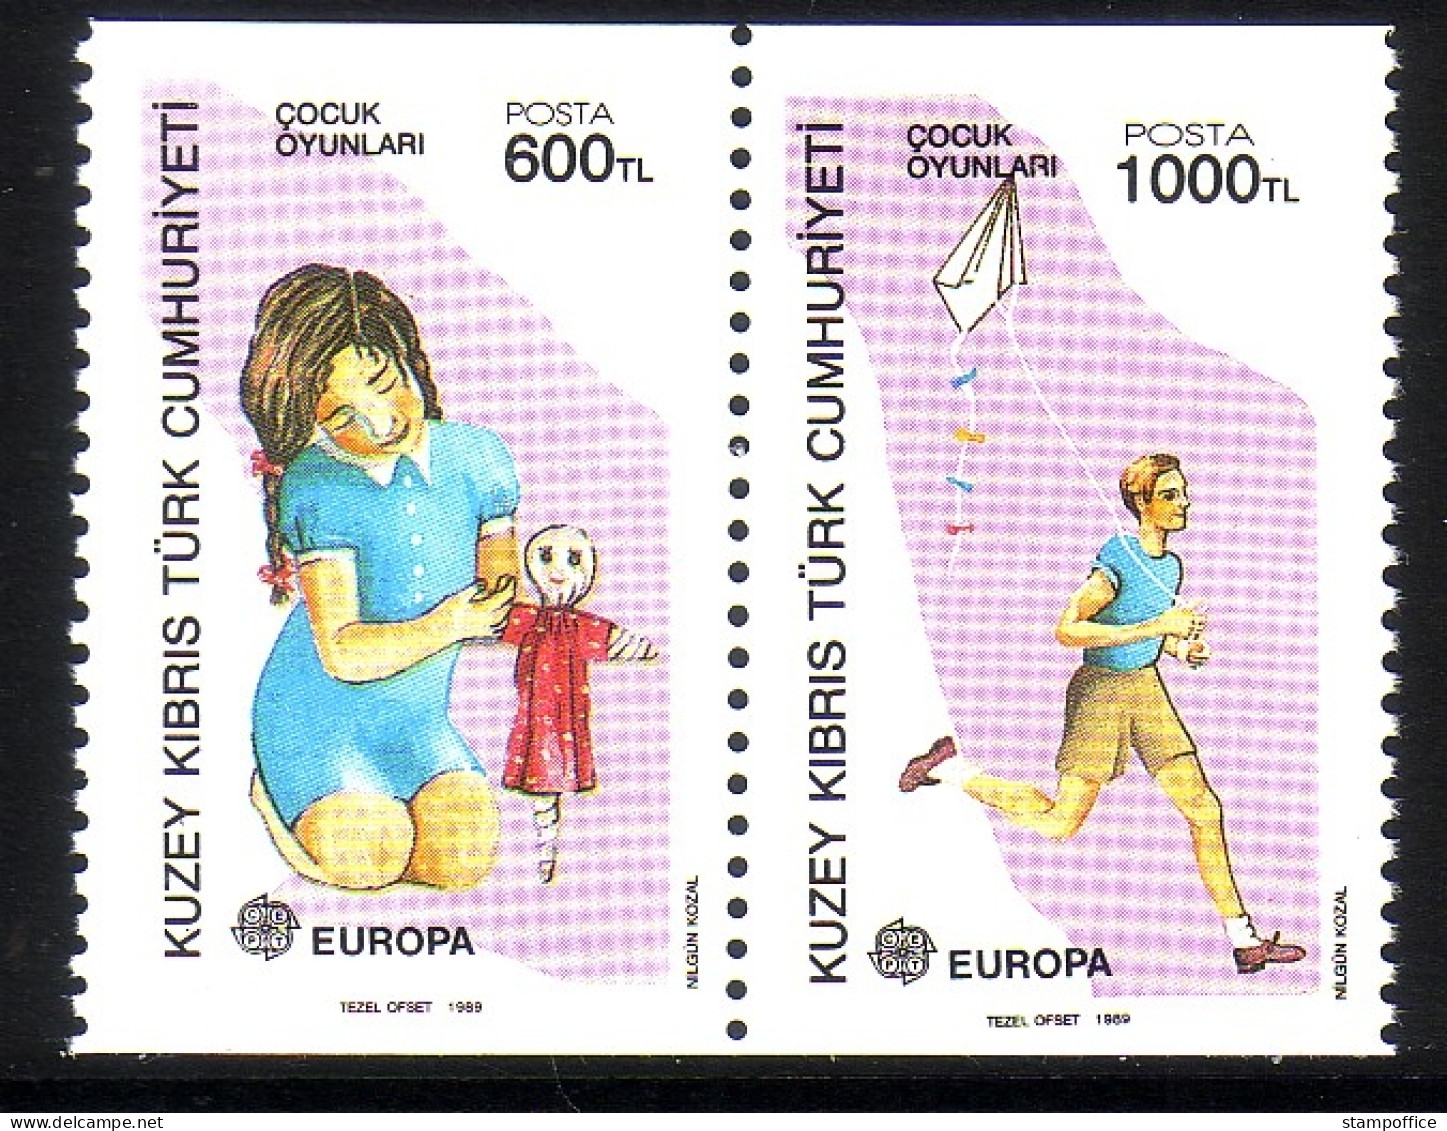 TÜRKISCH ZYPERN MI-NR. 249-250 C POSTFRISCH(MINT) EUROPA 1989 - KINDERSPIELE - 1989